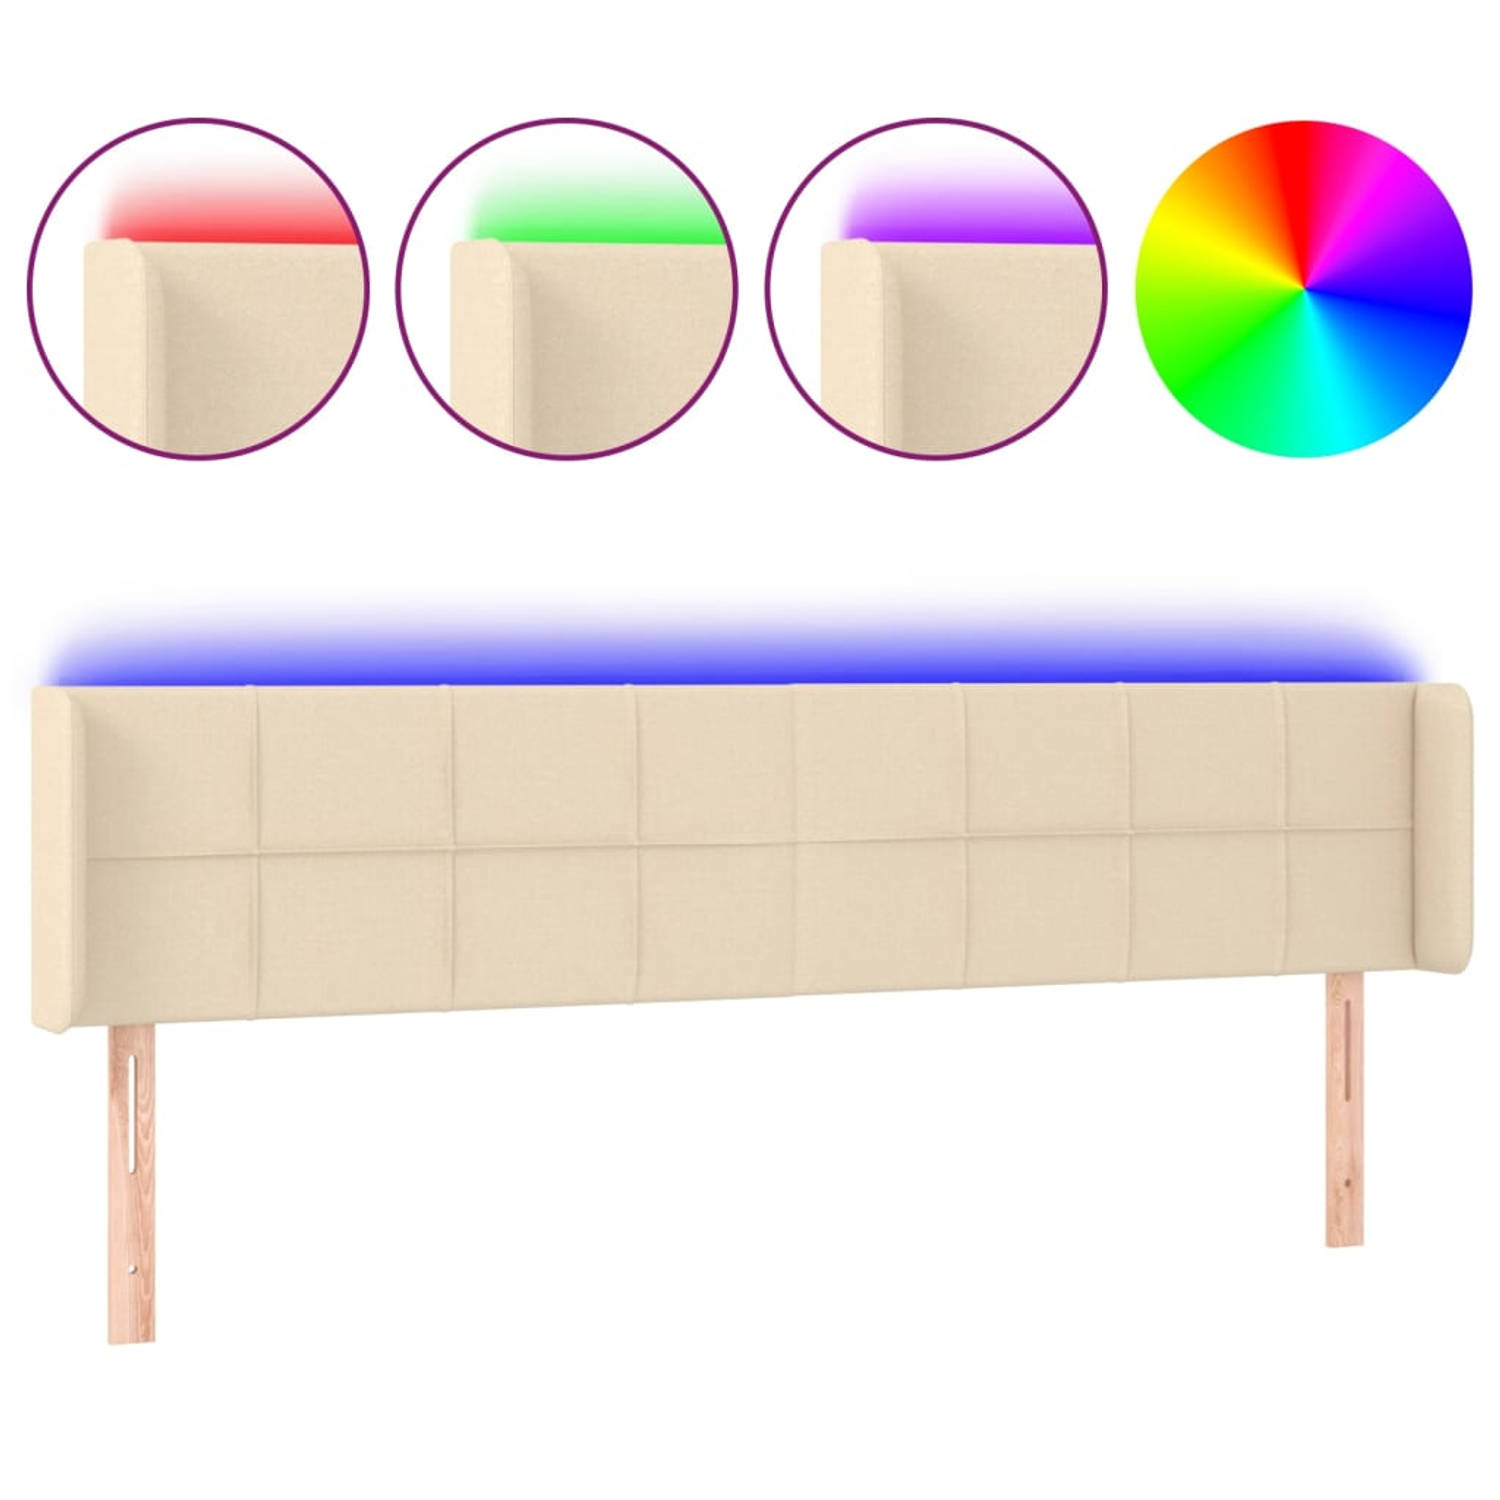 The Living Store Hoofdbord - LED - Stijlvol ontwerp - Verstelbaar - Duurzaam - Comfortabel - LED-strip met